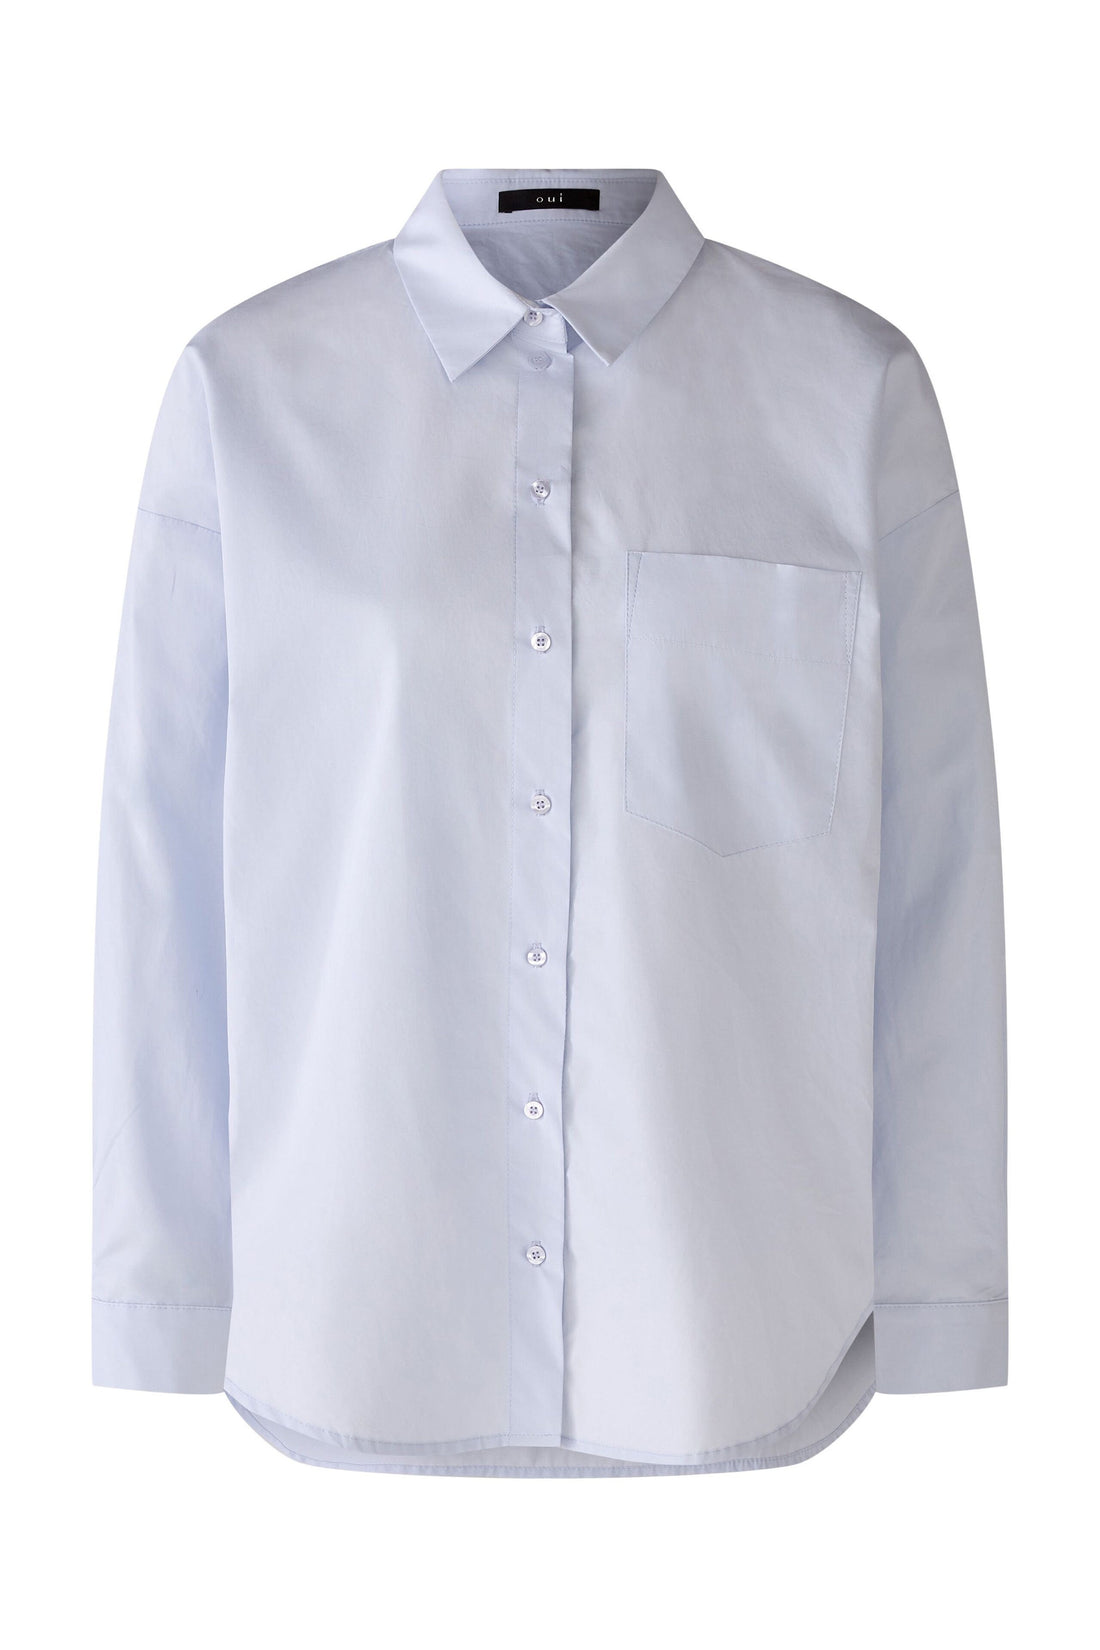 Shirt Blouse Pure Cotton_79258_5016_01